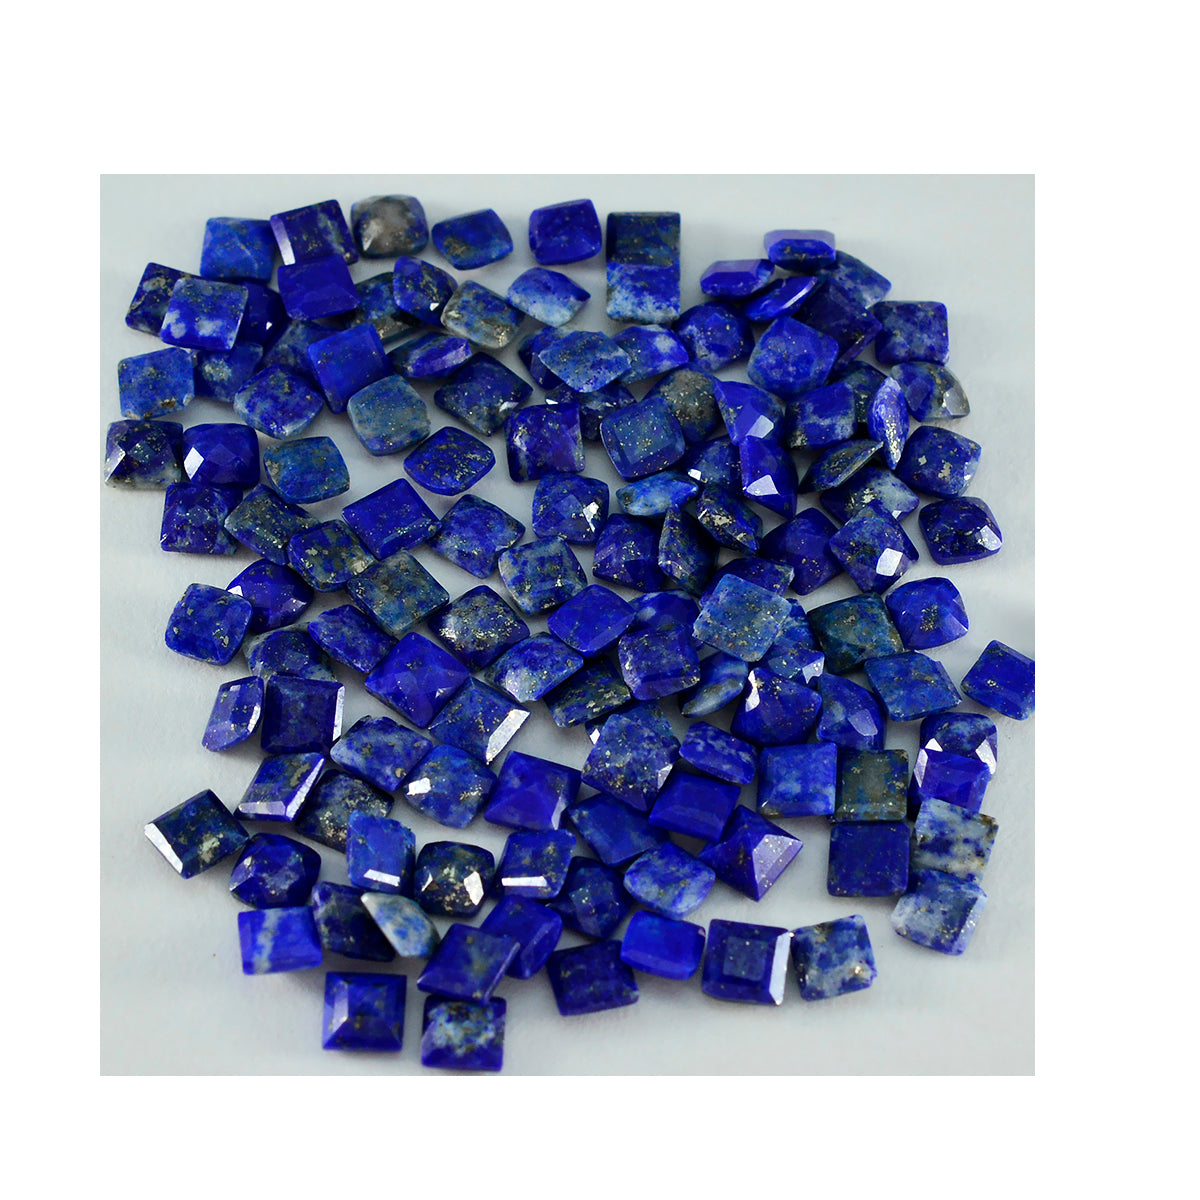 Riyogems 1 pièce de lapis lazuli bleu véritable à facettes 4x4mm forme carrée belle qualité pierre en vrac